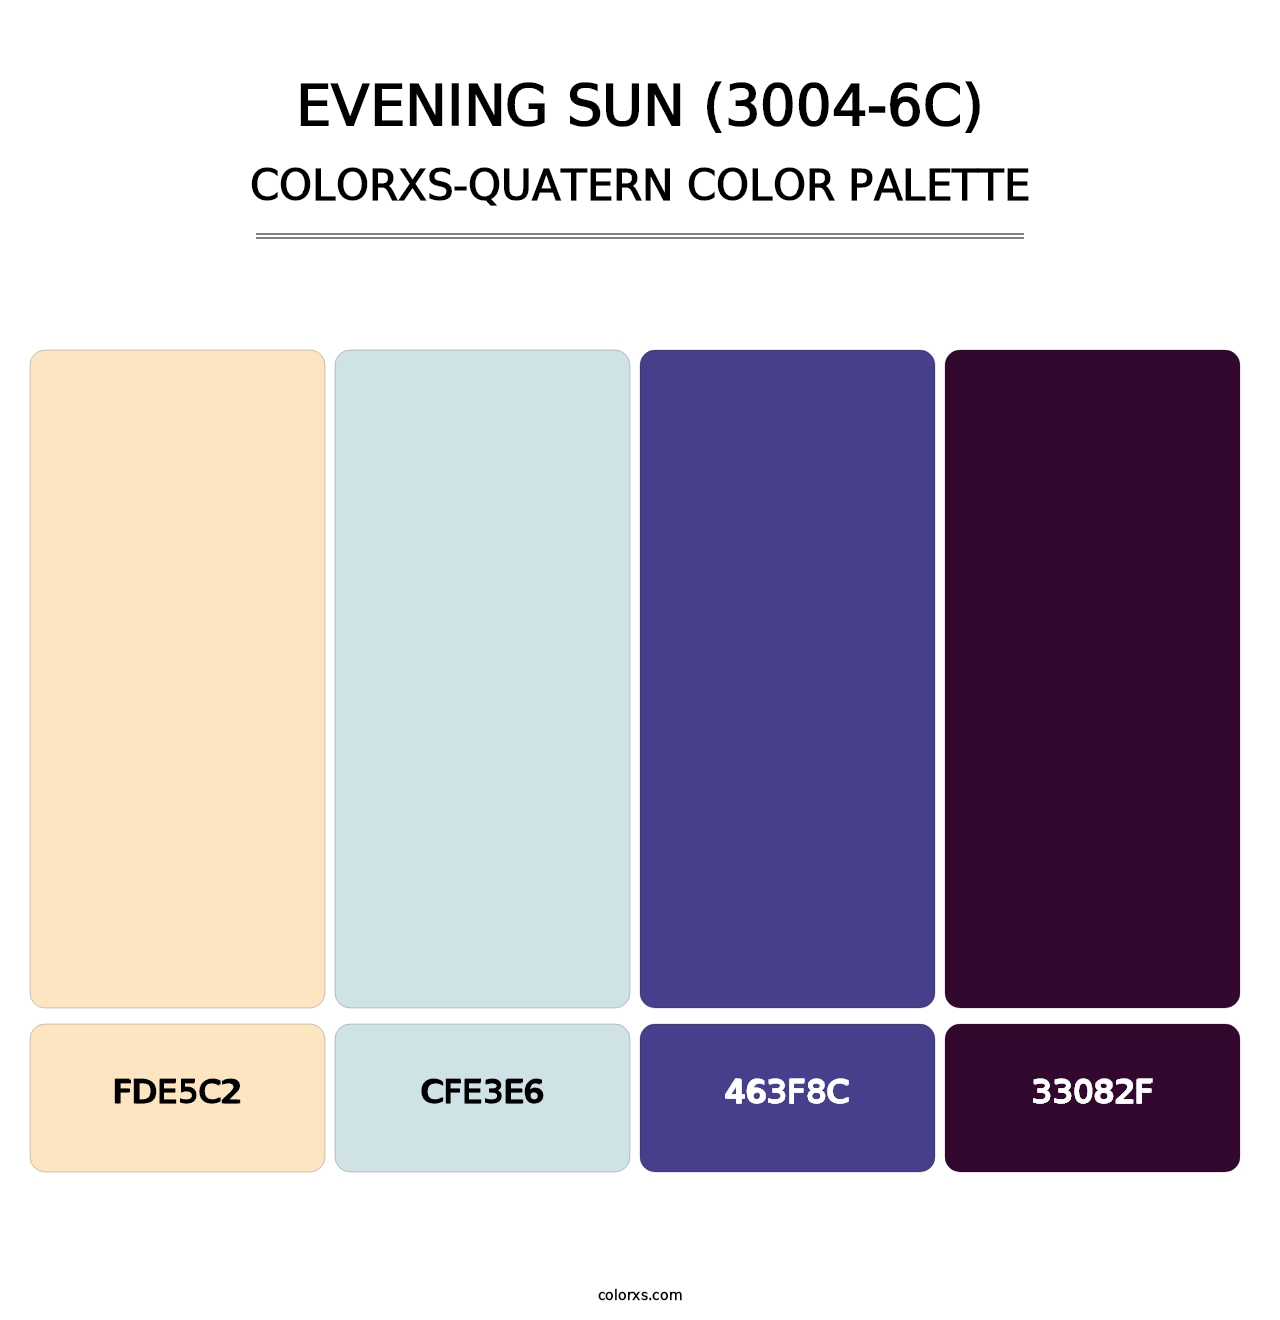 Evening Sun (3004-6C) - Colorxs Quatern Palette